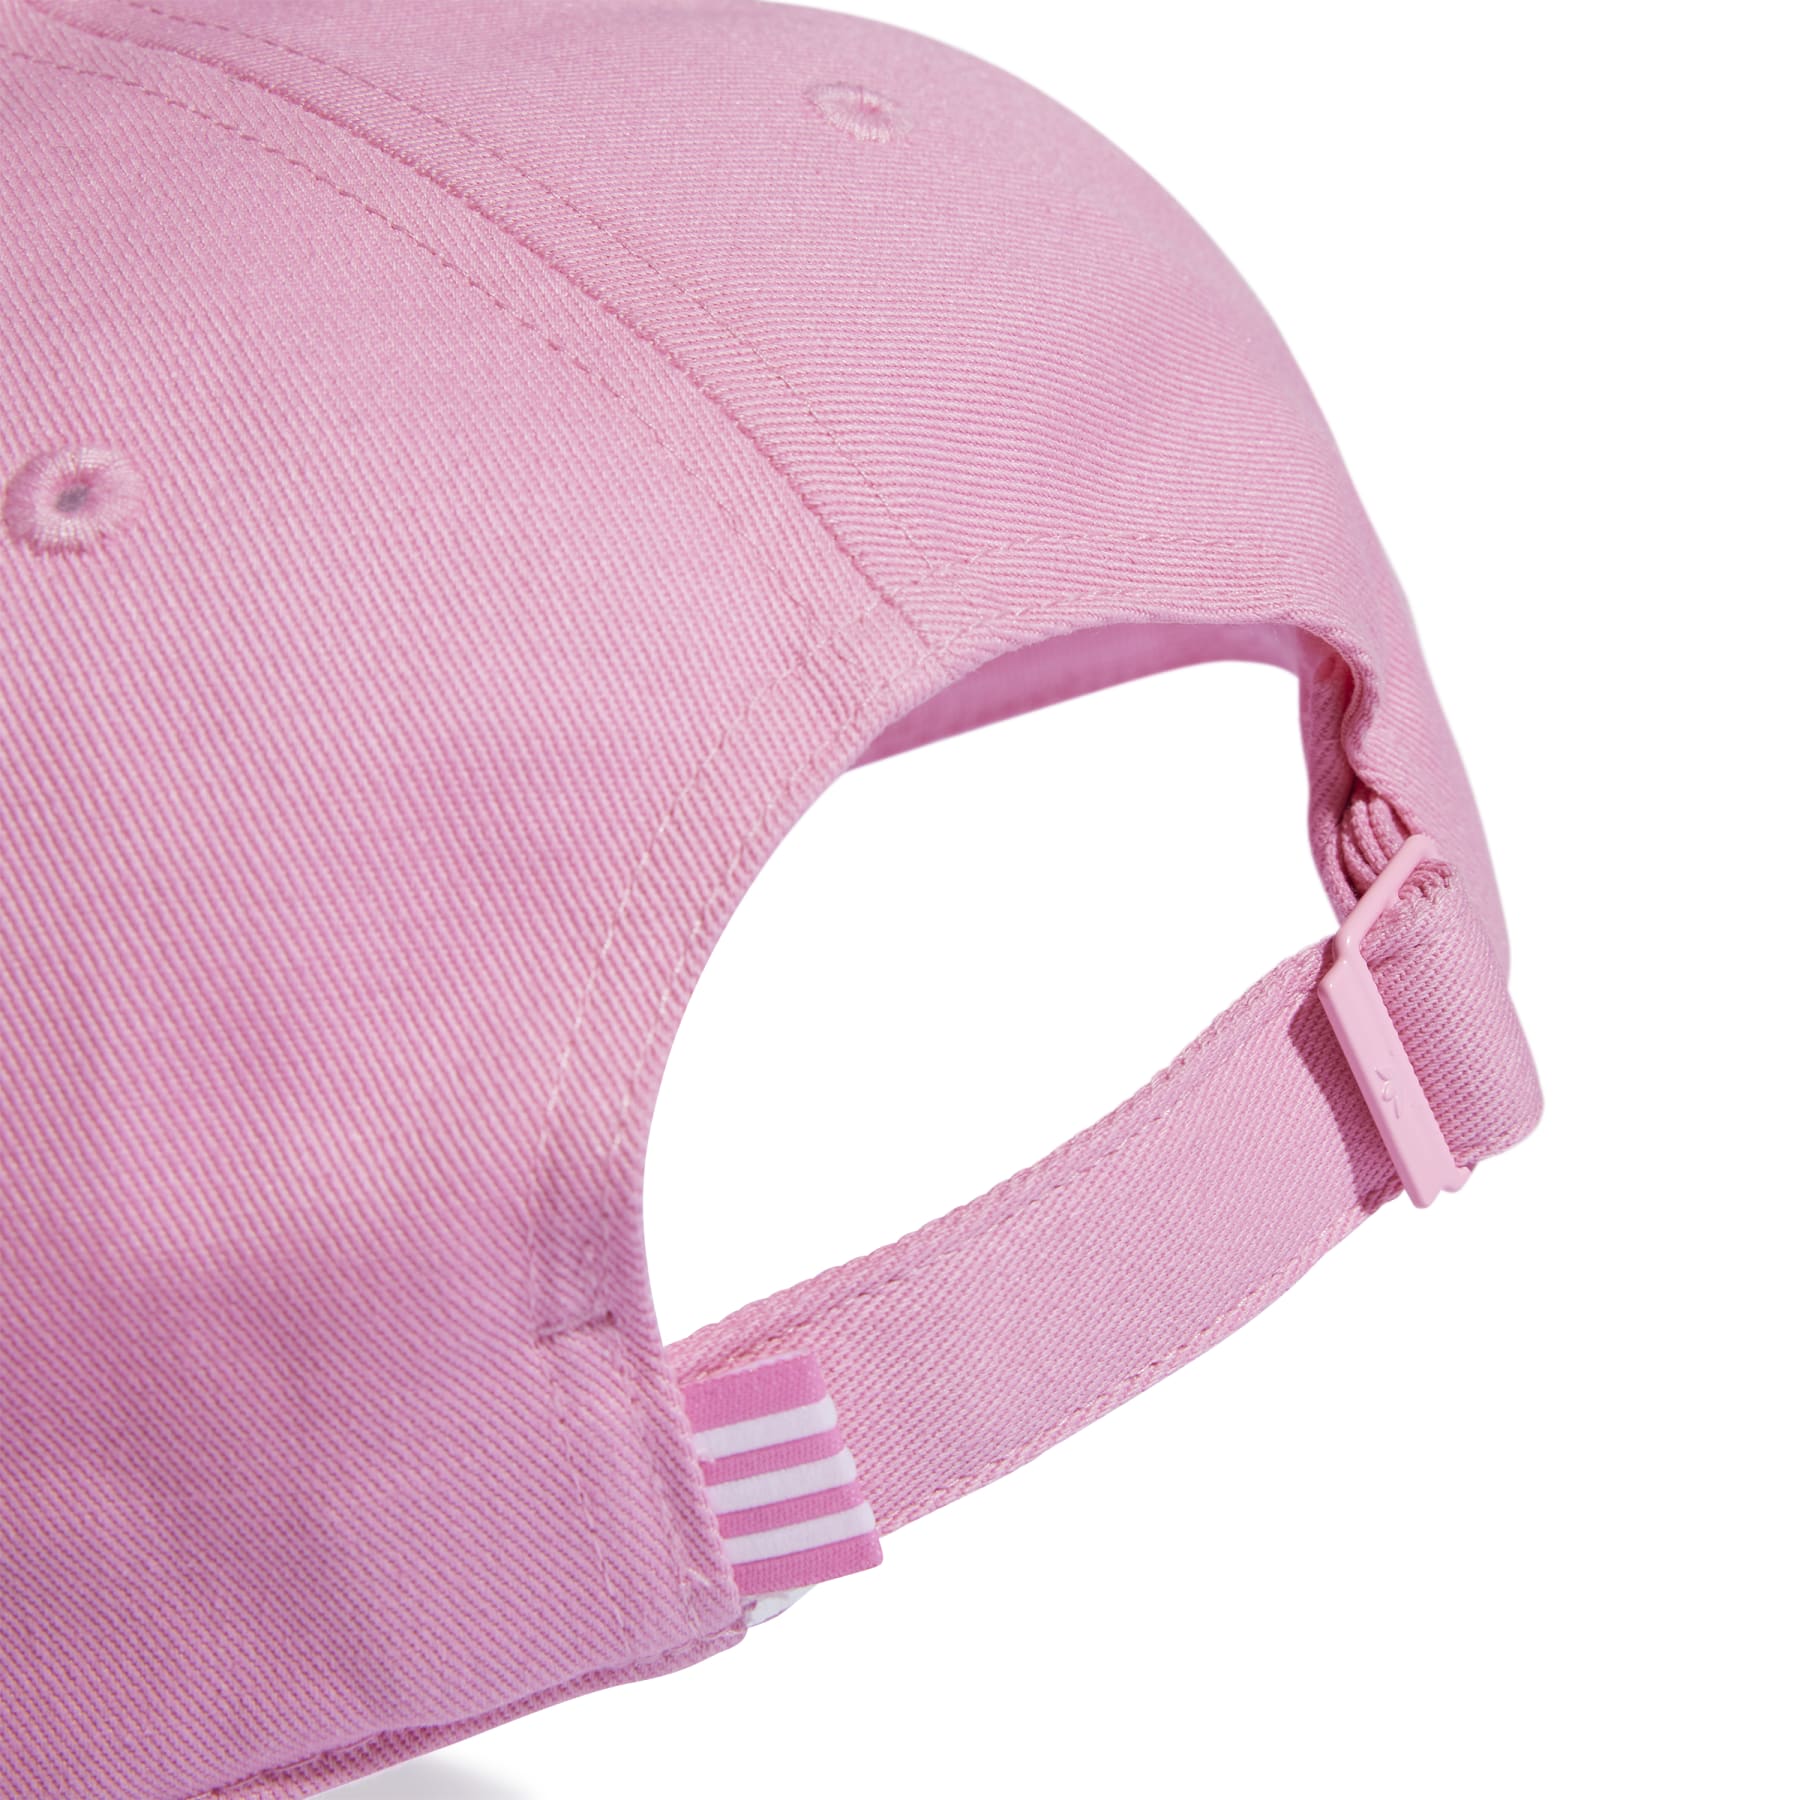 Trefoil Baseball Cap - Bliss Pink